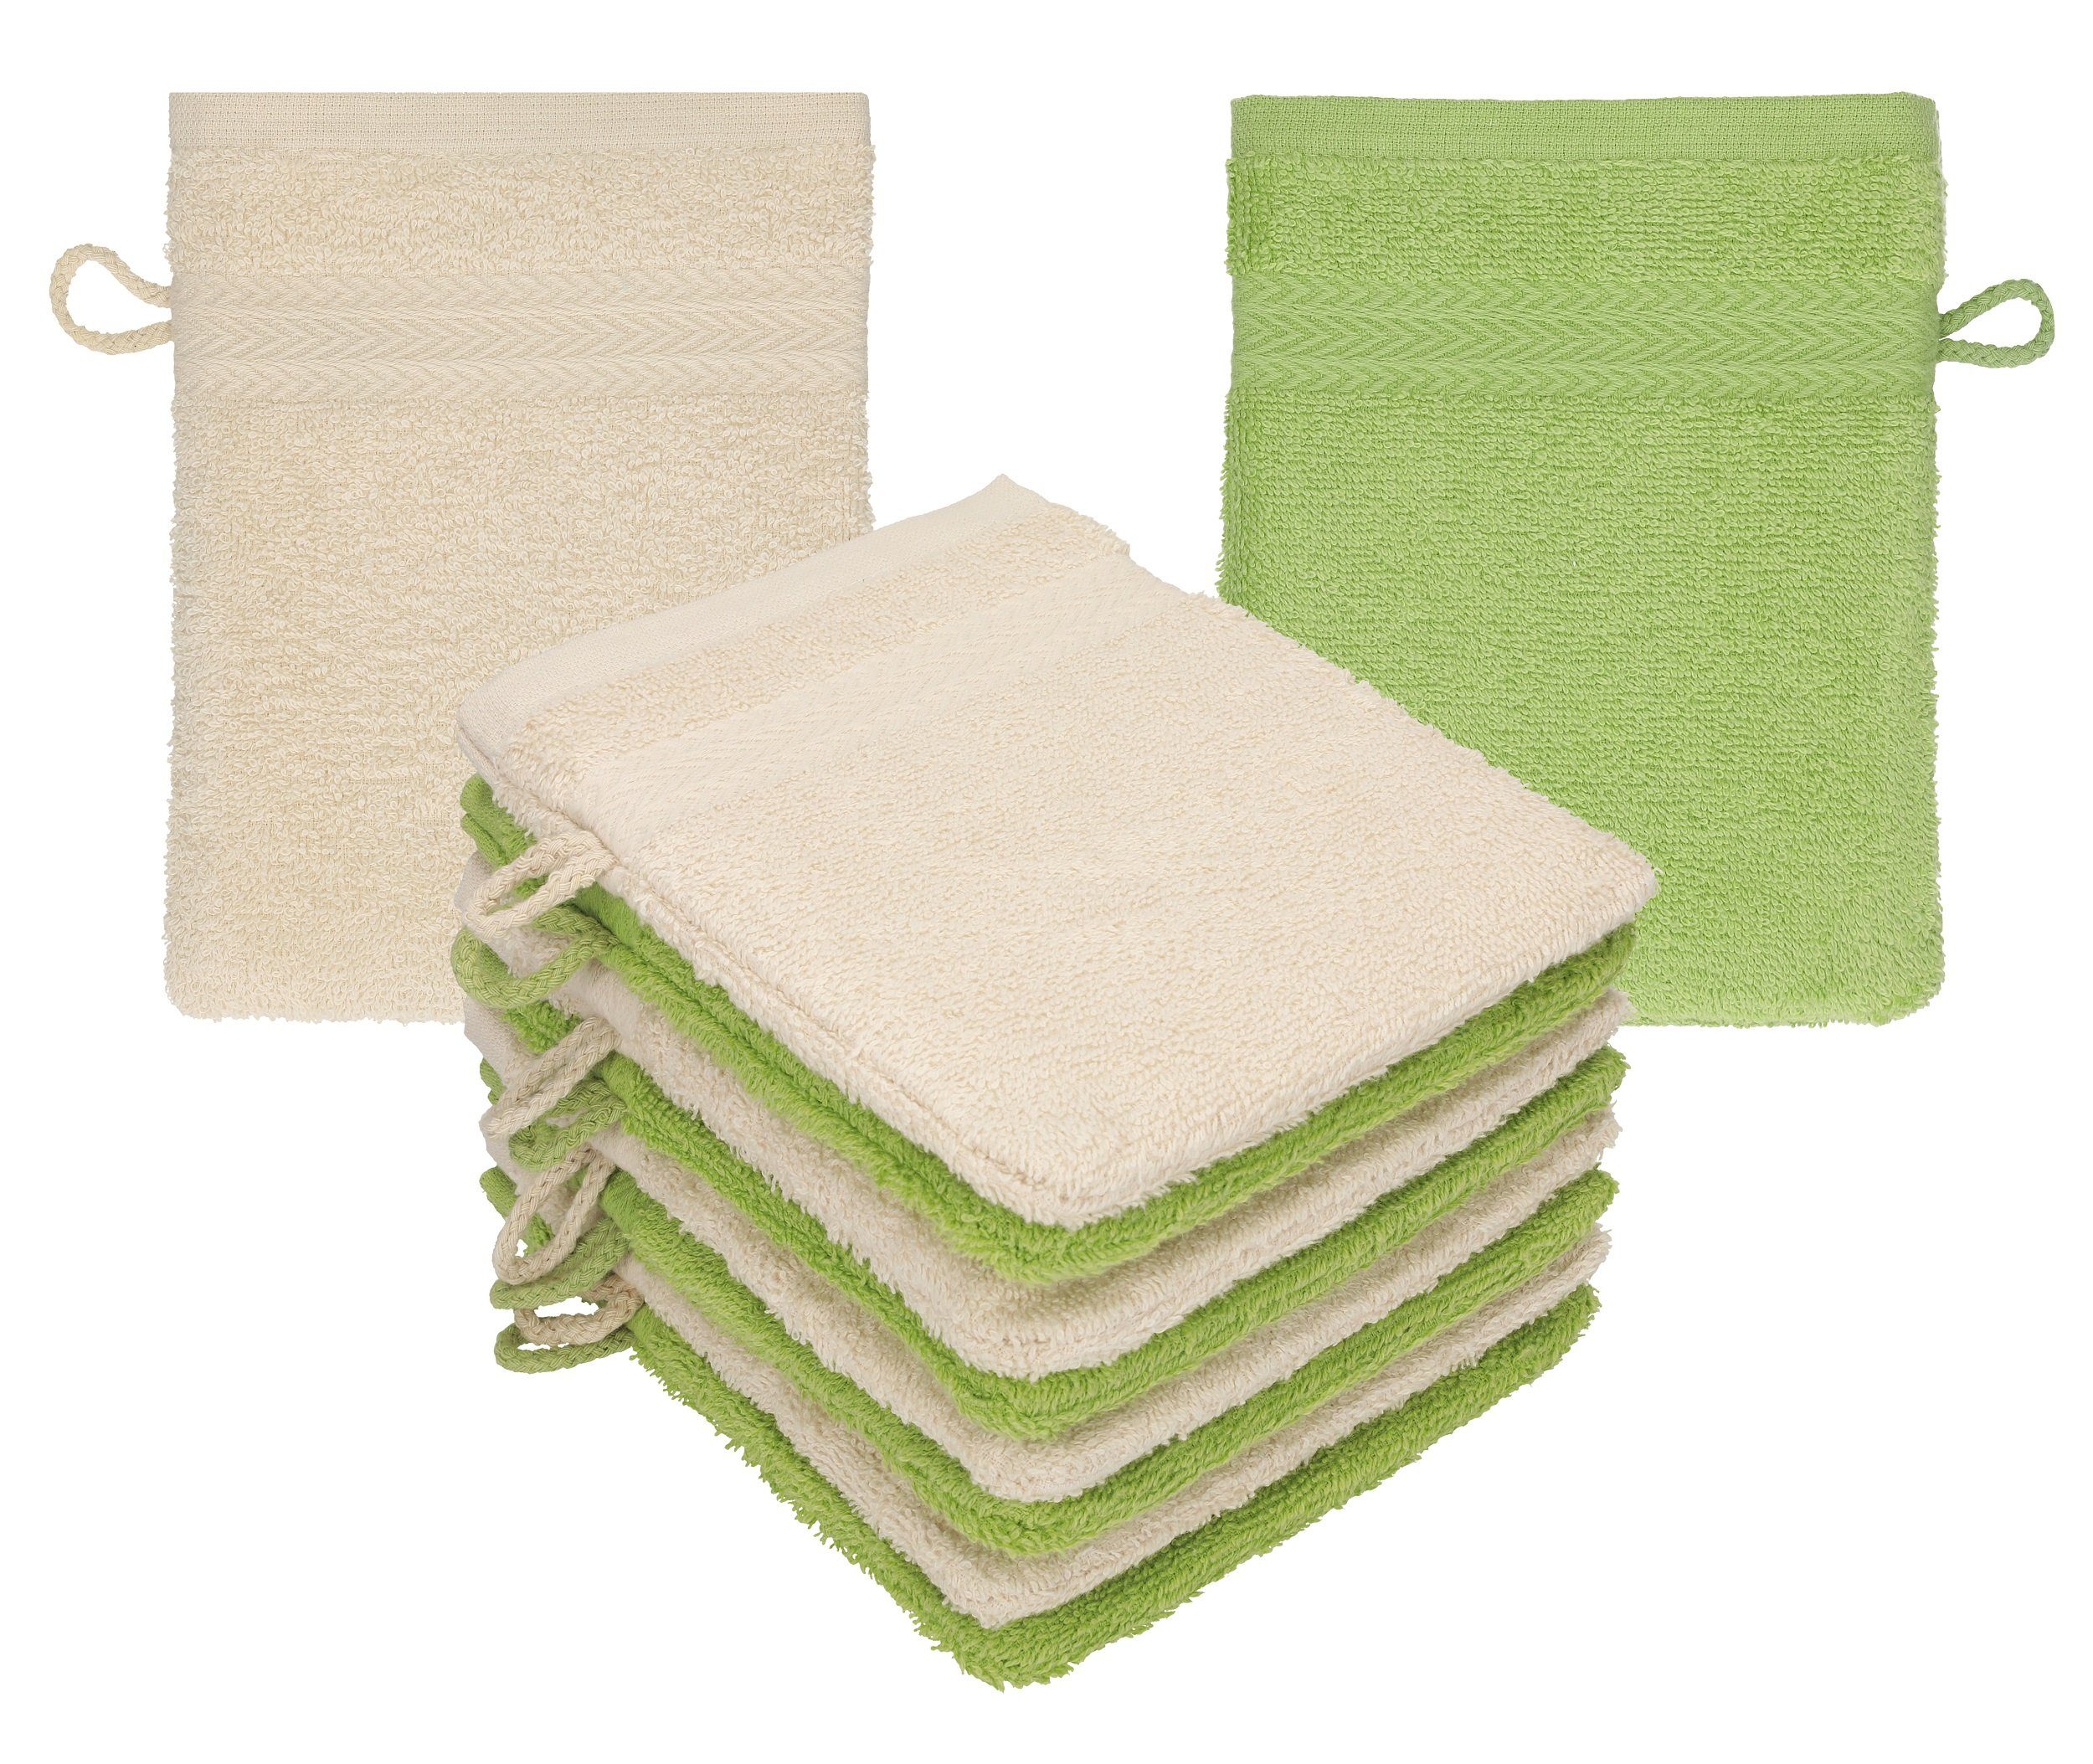 Betz Waschhandschuh 10 Stück Waschhandschuhe Premium 100% Baumwolle Waschlappen Set 16x21 cm Farbe Sand - avocadogrün